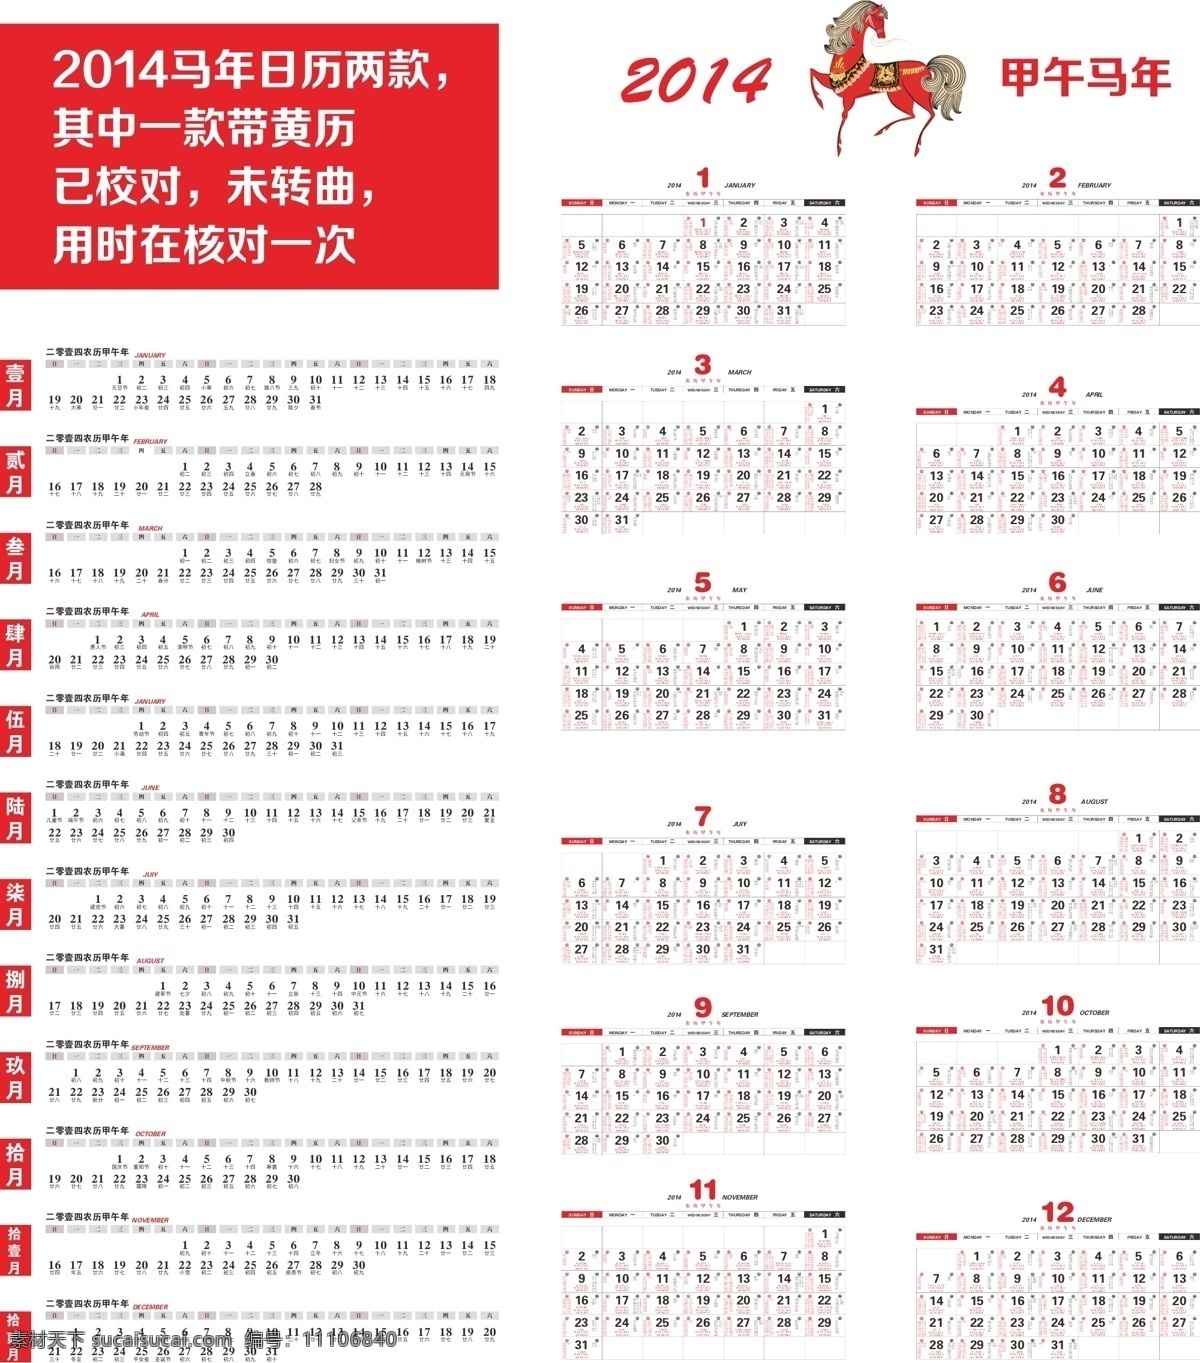 2014 年 日历 模板下载 矢量 春节 分层 挂历日历 甲午年 节日素材 马年 马 新年日历 其他节日